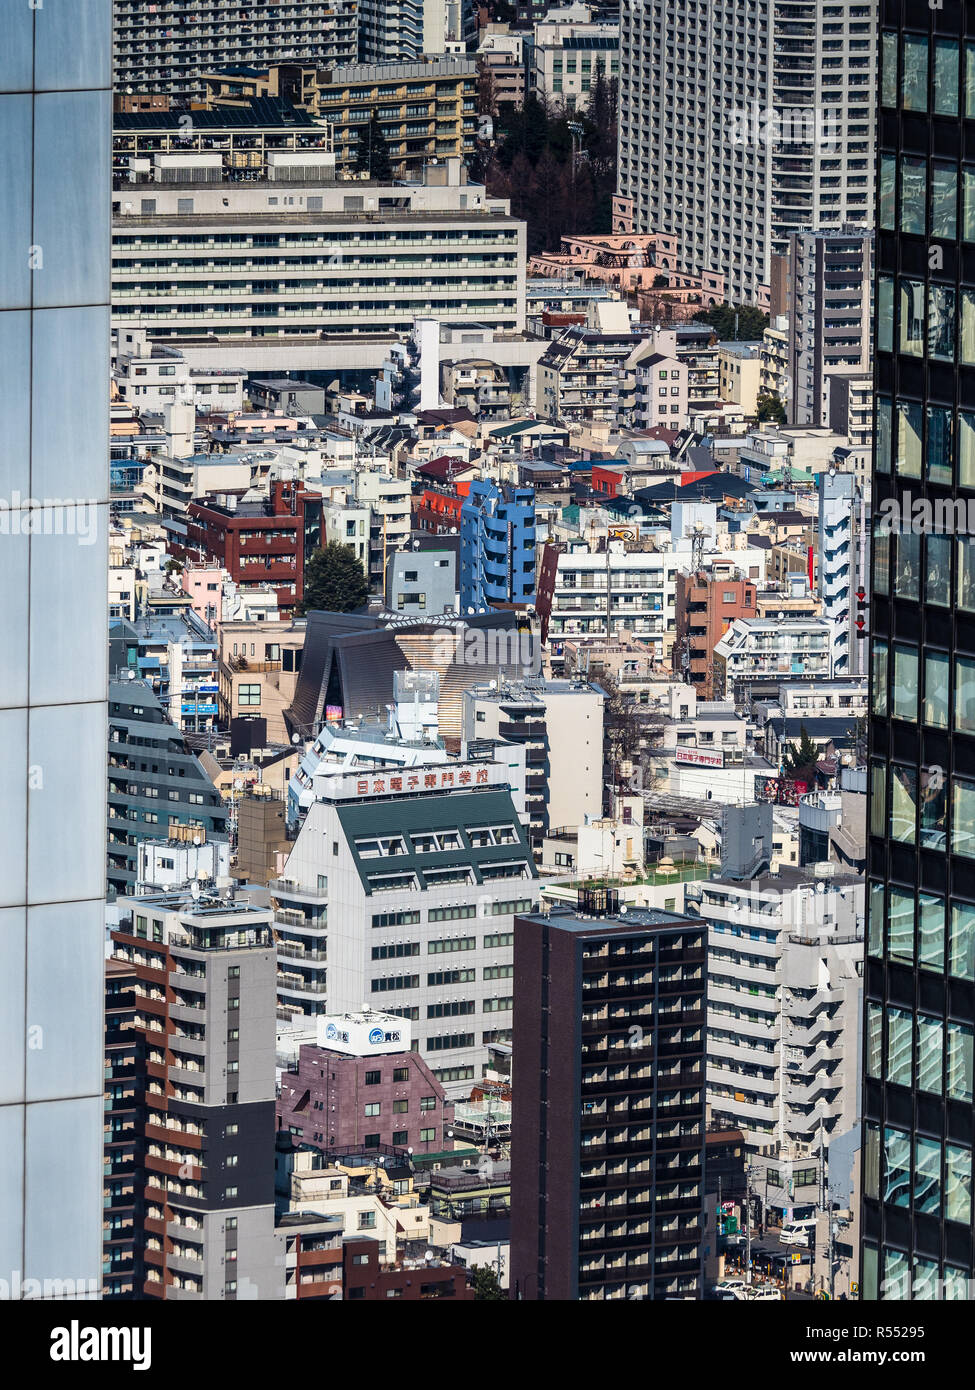 Tokio mit hoher Dichte - das überfüllte Tokio - Blick auf die überfüllten Gebäude im japanischen Stadtbild von Tokio Stockfoto